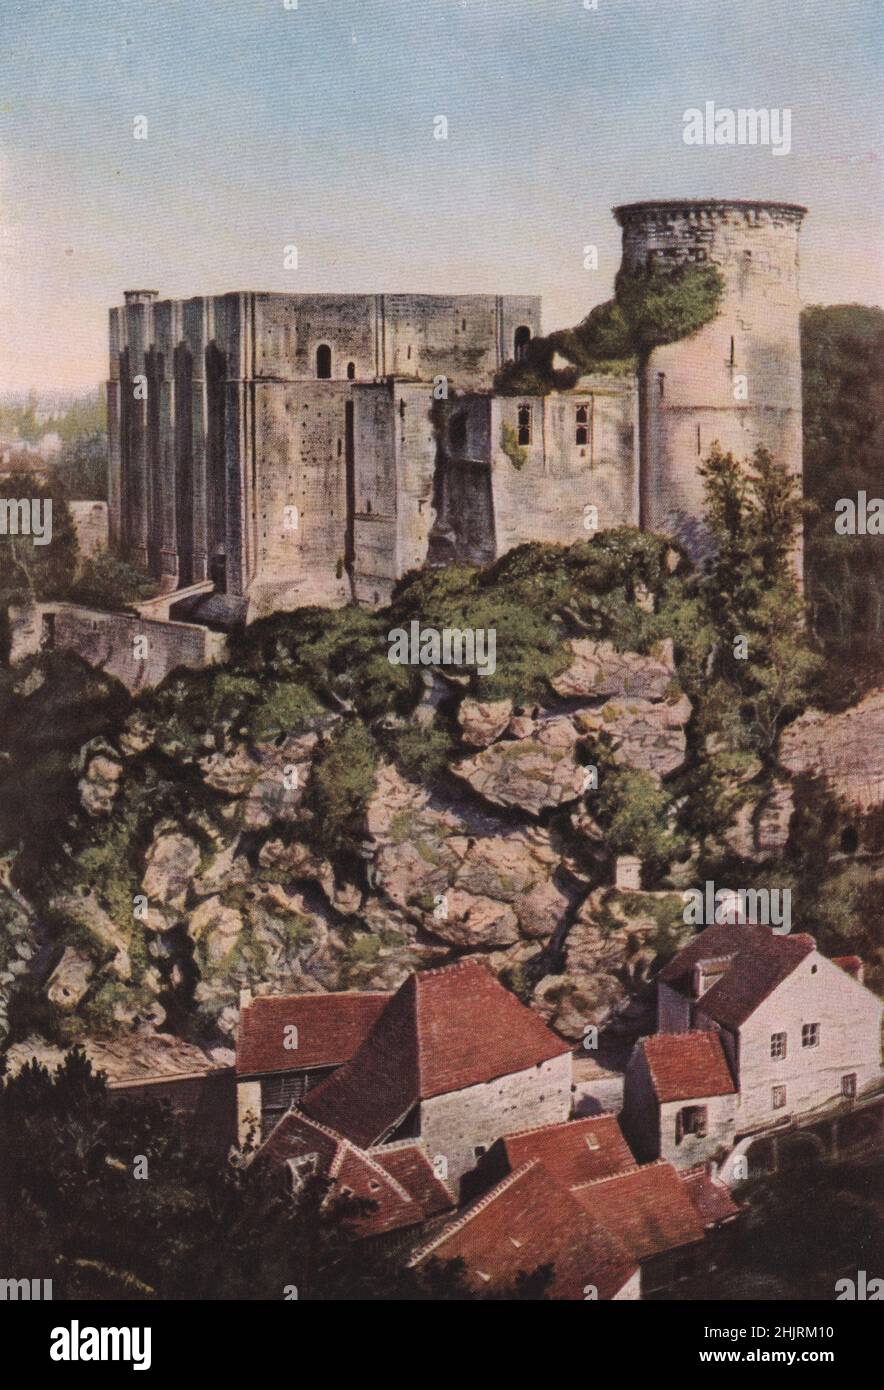 Dal castello di Falaise Robert il Diavolo spiò Arletta, la figlia del conciatore, da cui ottenne Guglielmo il Conquistatore. Calvados. Normandia (1923) Foto Stock